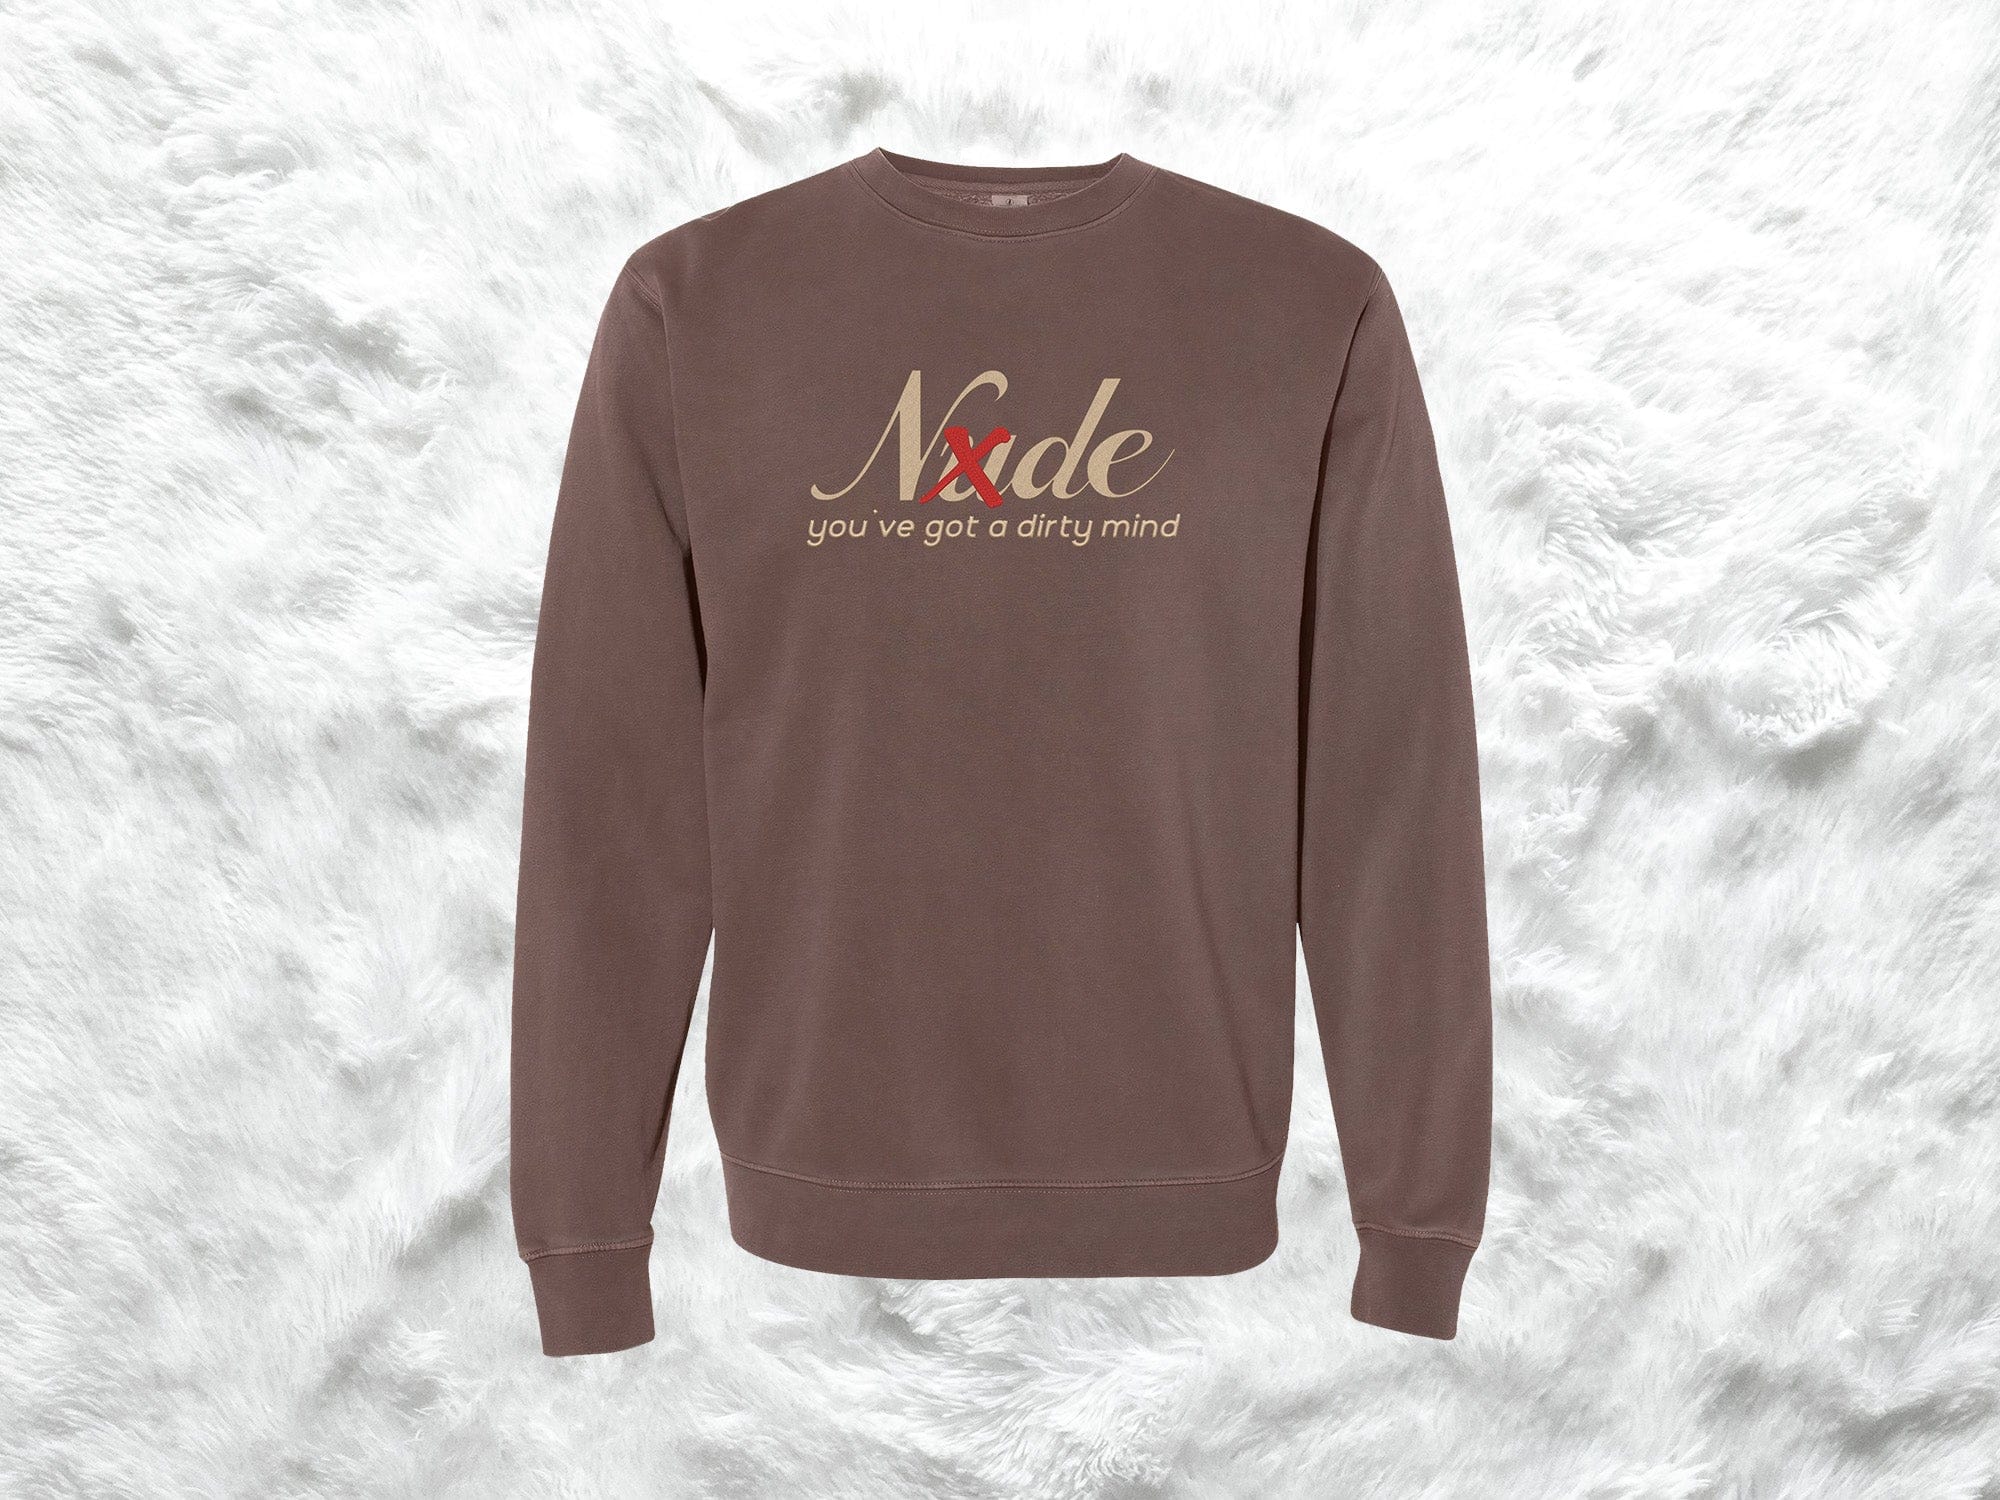 G-idle Nxde Sweatshirts